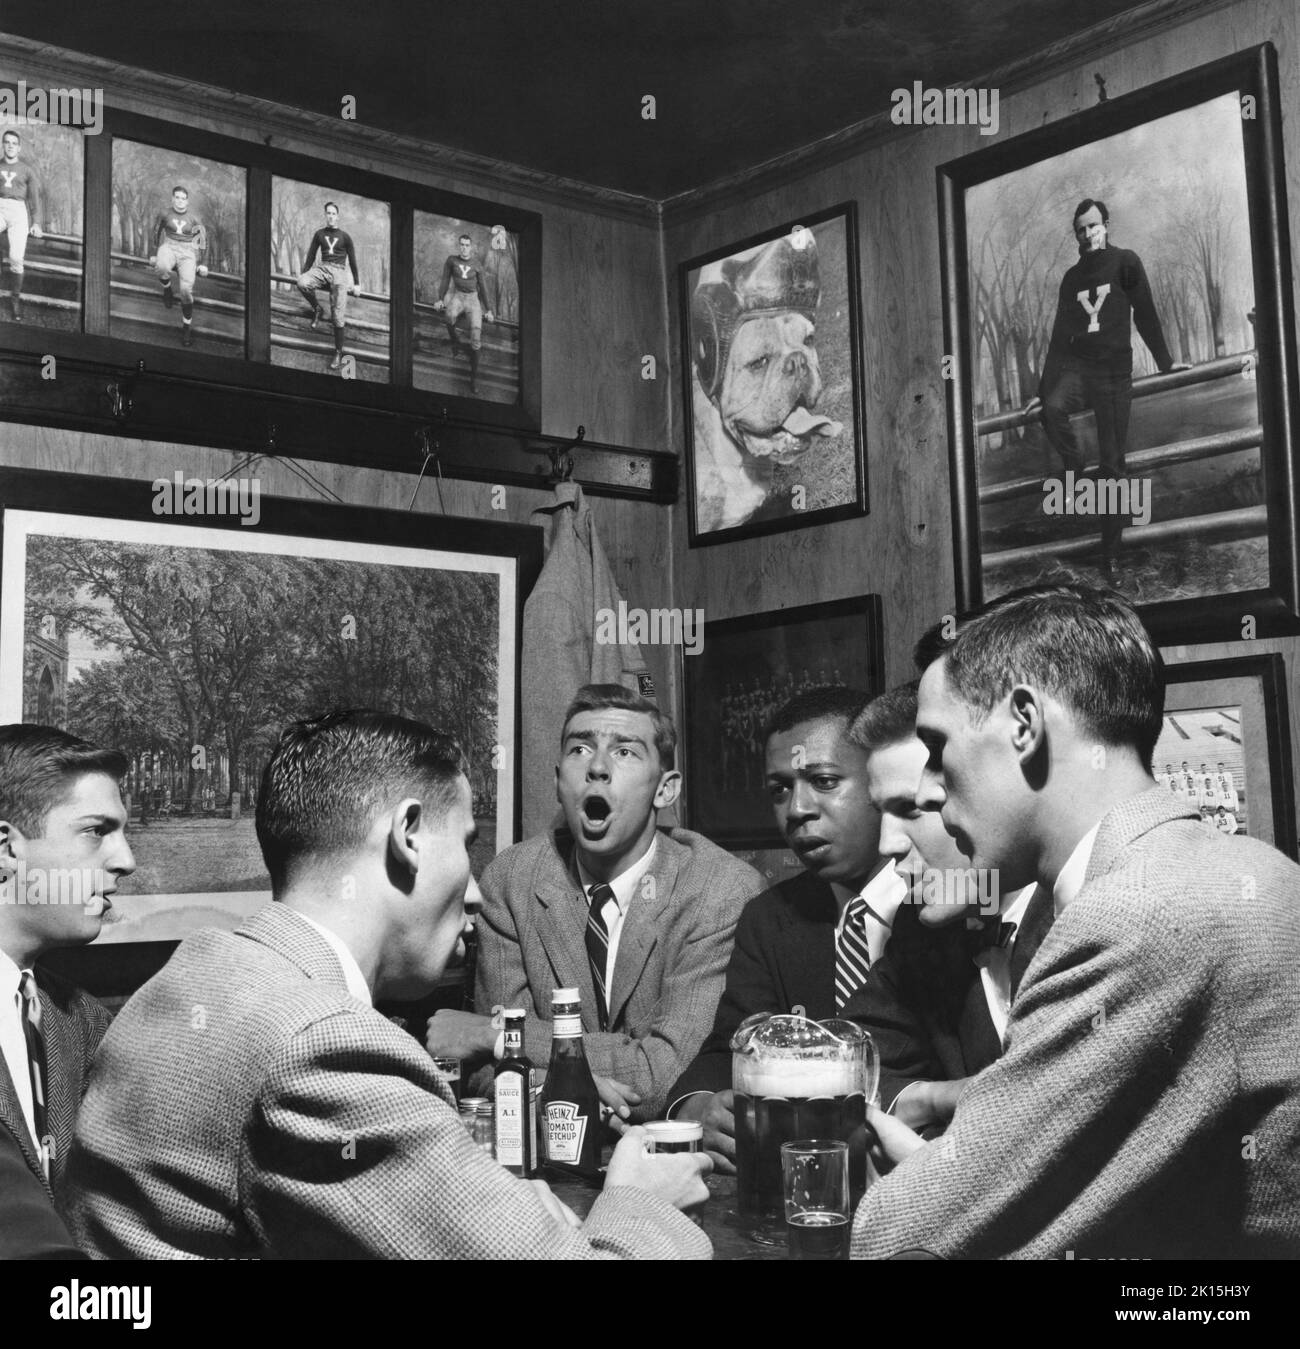 Historisches Bild von Freunden, die in Mory's Temple Bar in New Haven, Connecticut, trinken; Mitte des 20th. Jahrhunderts. Stockfoto